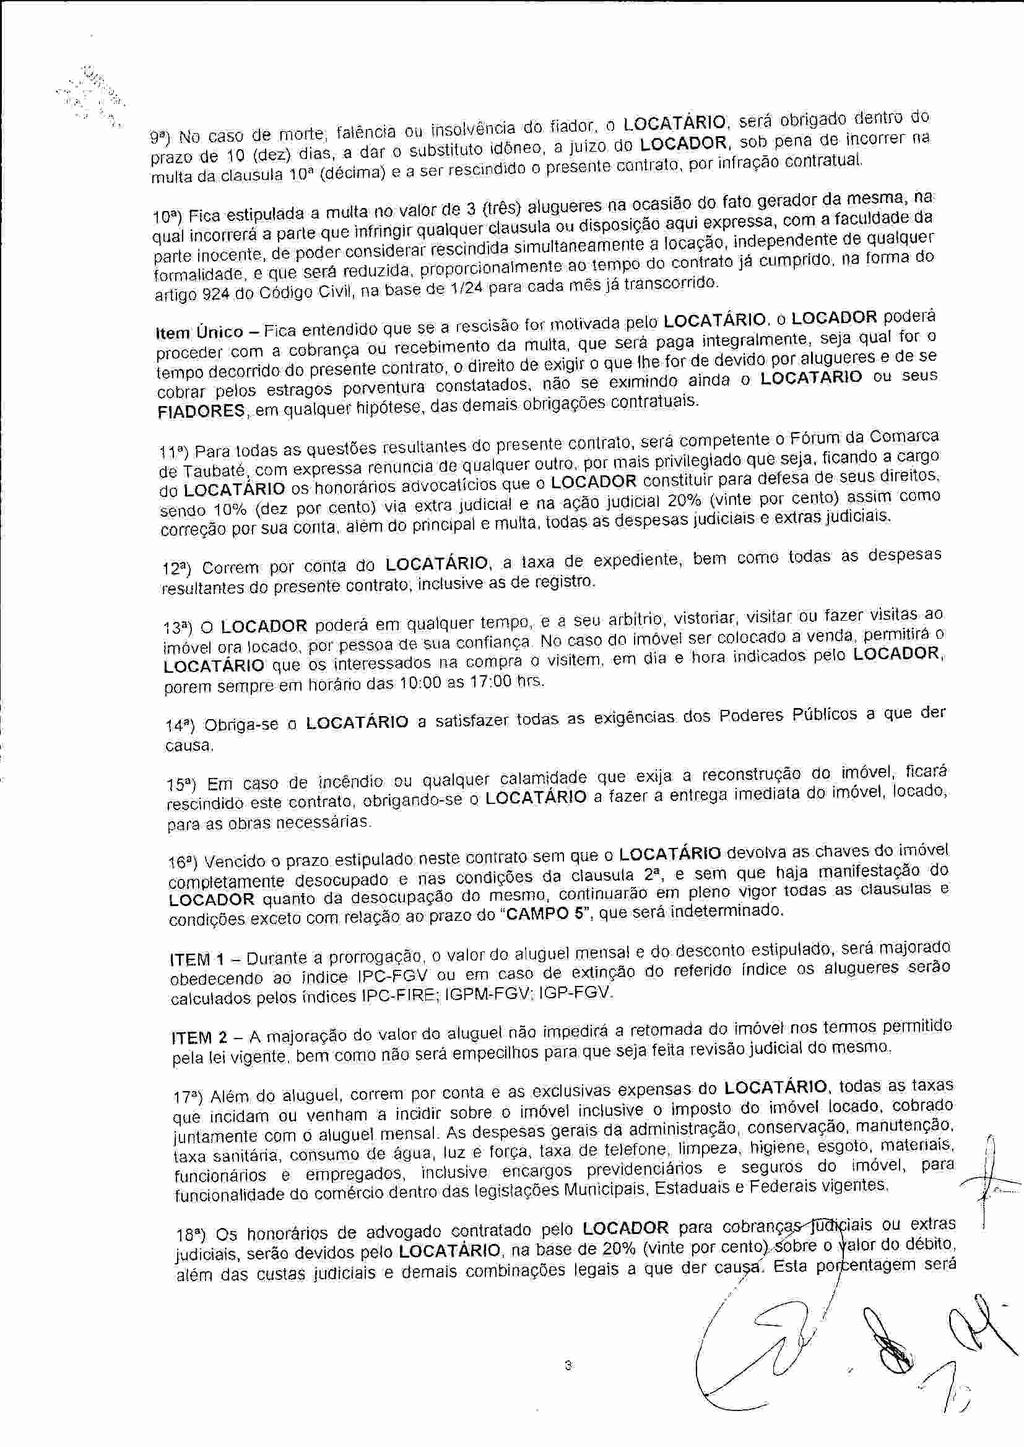 fls. 8 Este documento é cópia do original, assinado digitalmente por FELIPE NELIO DOS SANTOS ARAUJO e Tribunal de Justica Sao Paulo, protocolado em 10/12/2014 às 17:46, sob o número